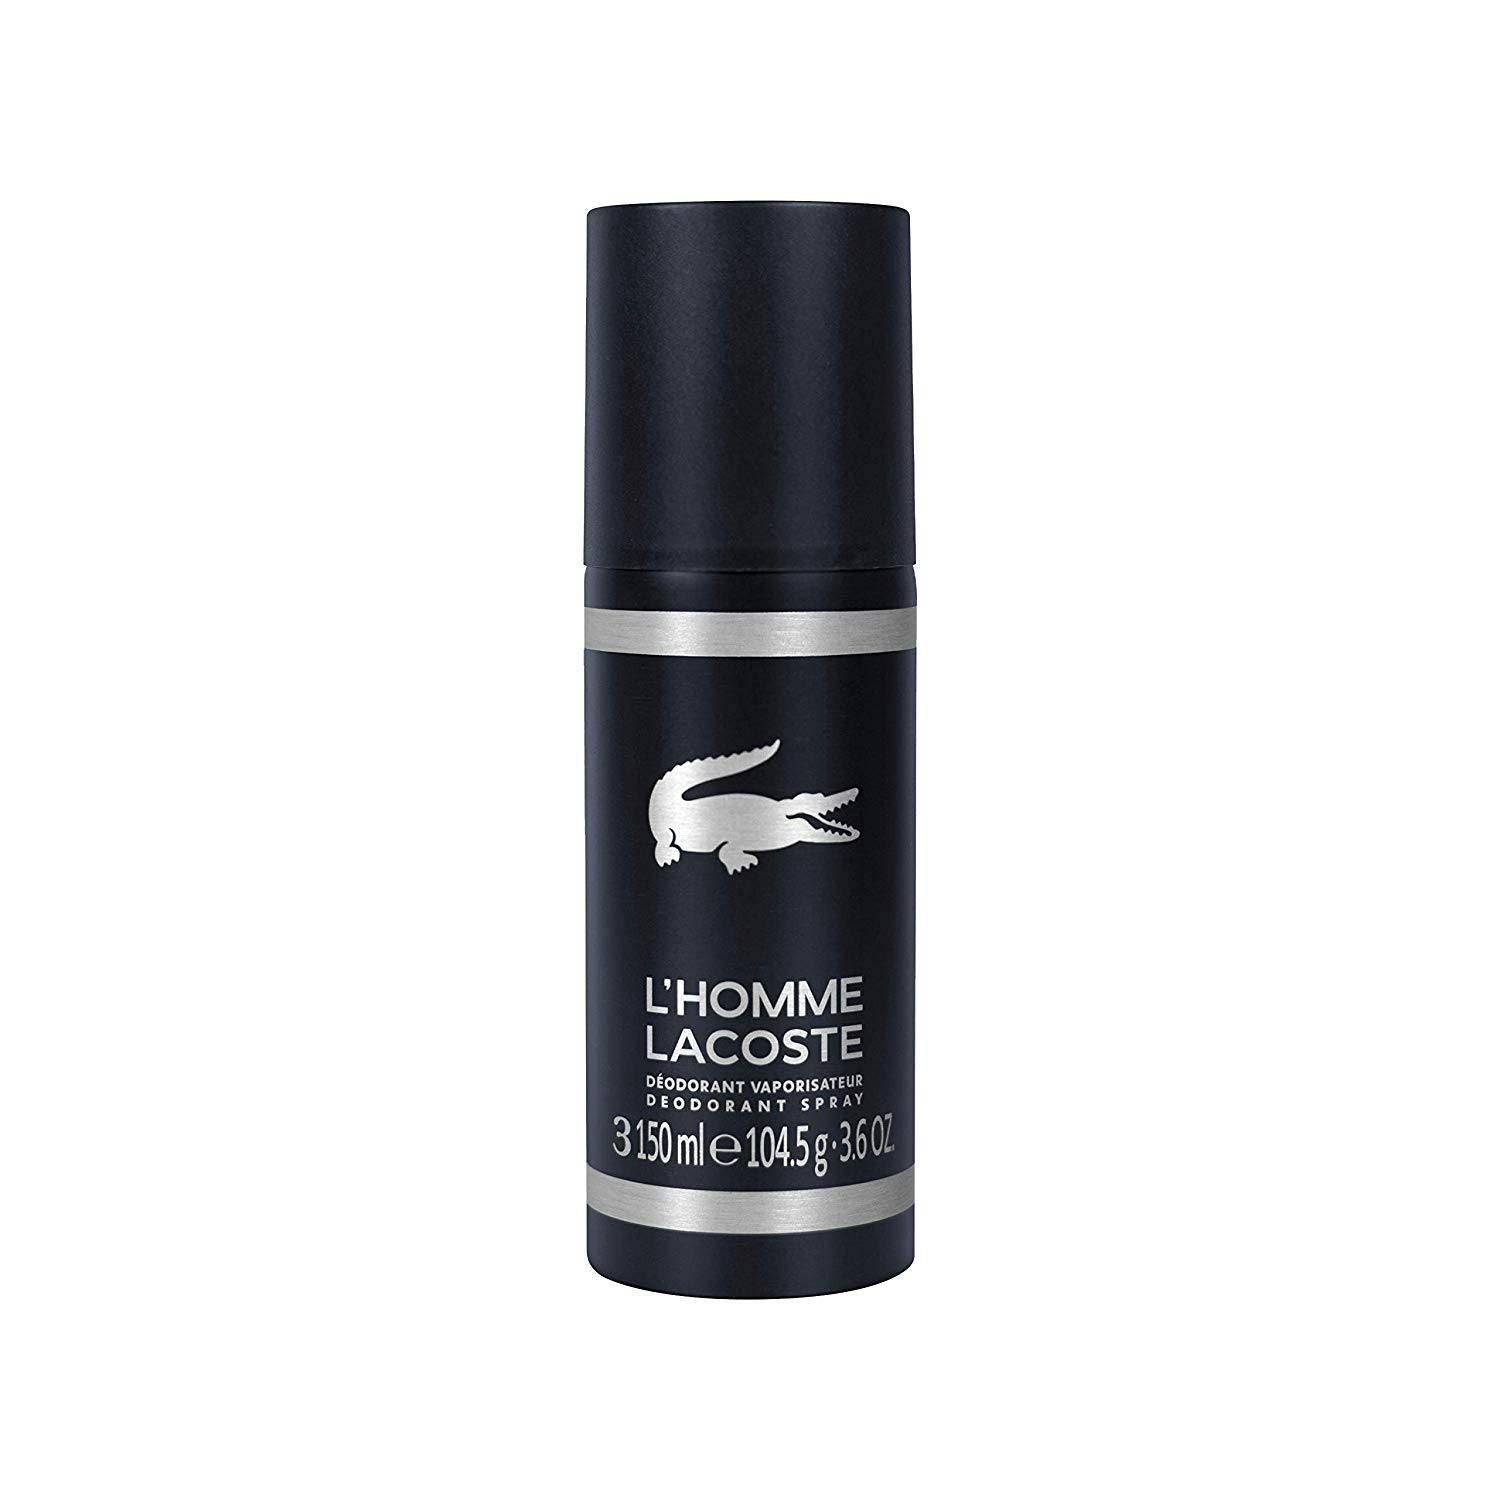 Produktiv Rejse tiltale elektronisk Lacoste L'Homme Deodorant Spray | 150ml | The Fragrance Shop | The  Fragrance Shop